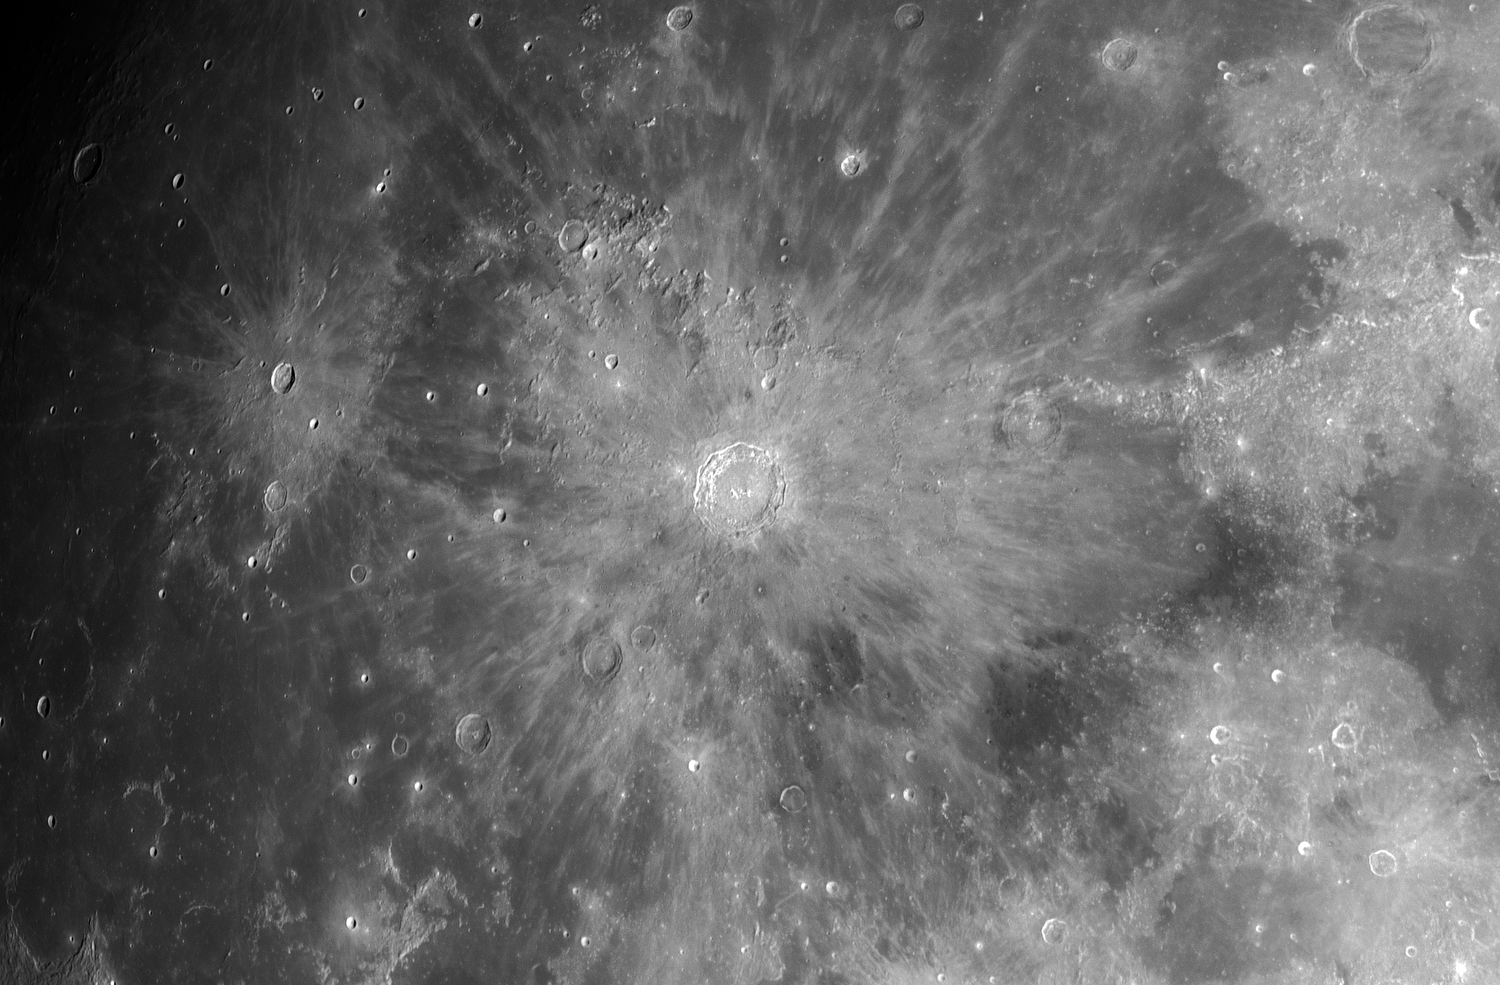 Copernicus-Kepler am 19. September 2021